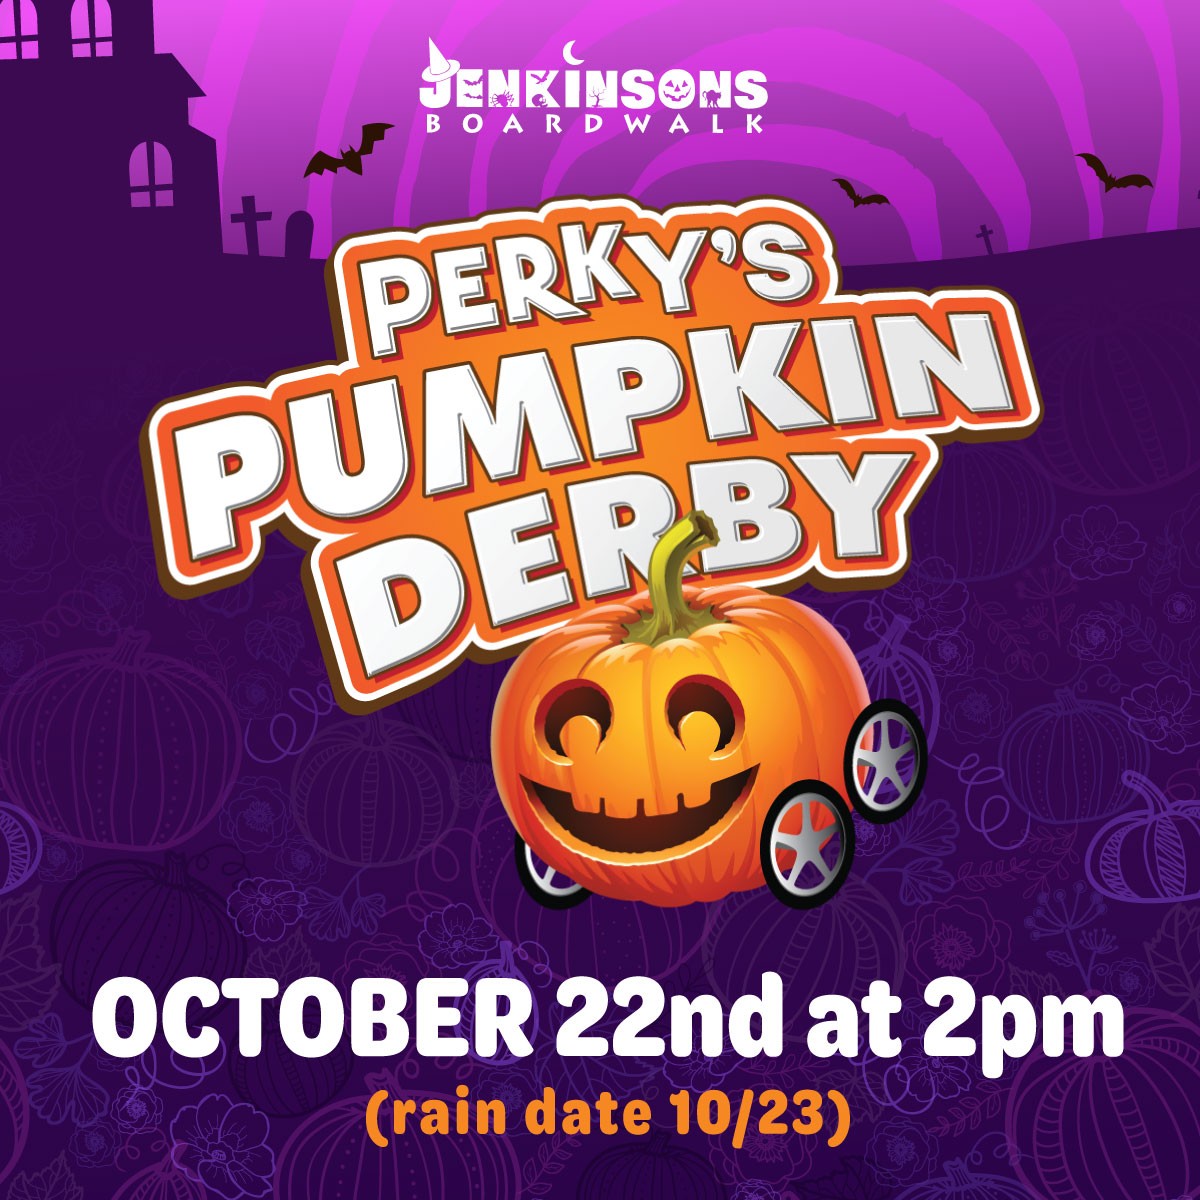 perky's pumpkin derby